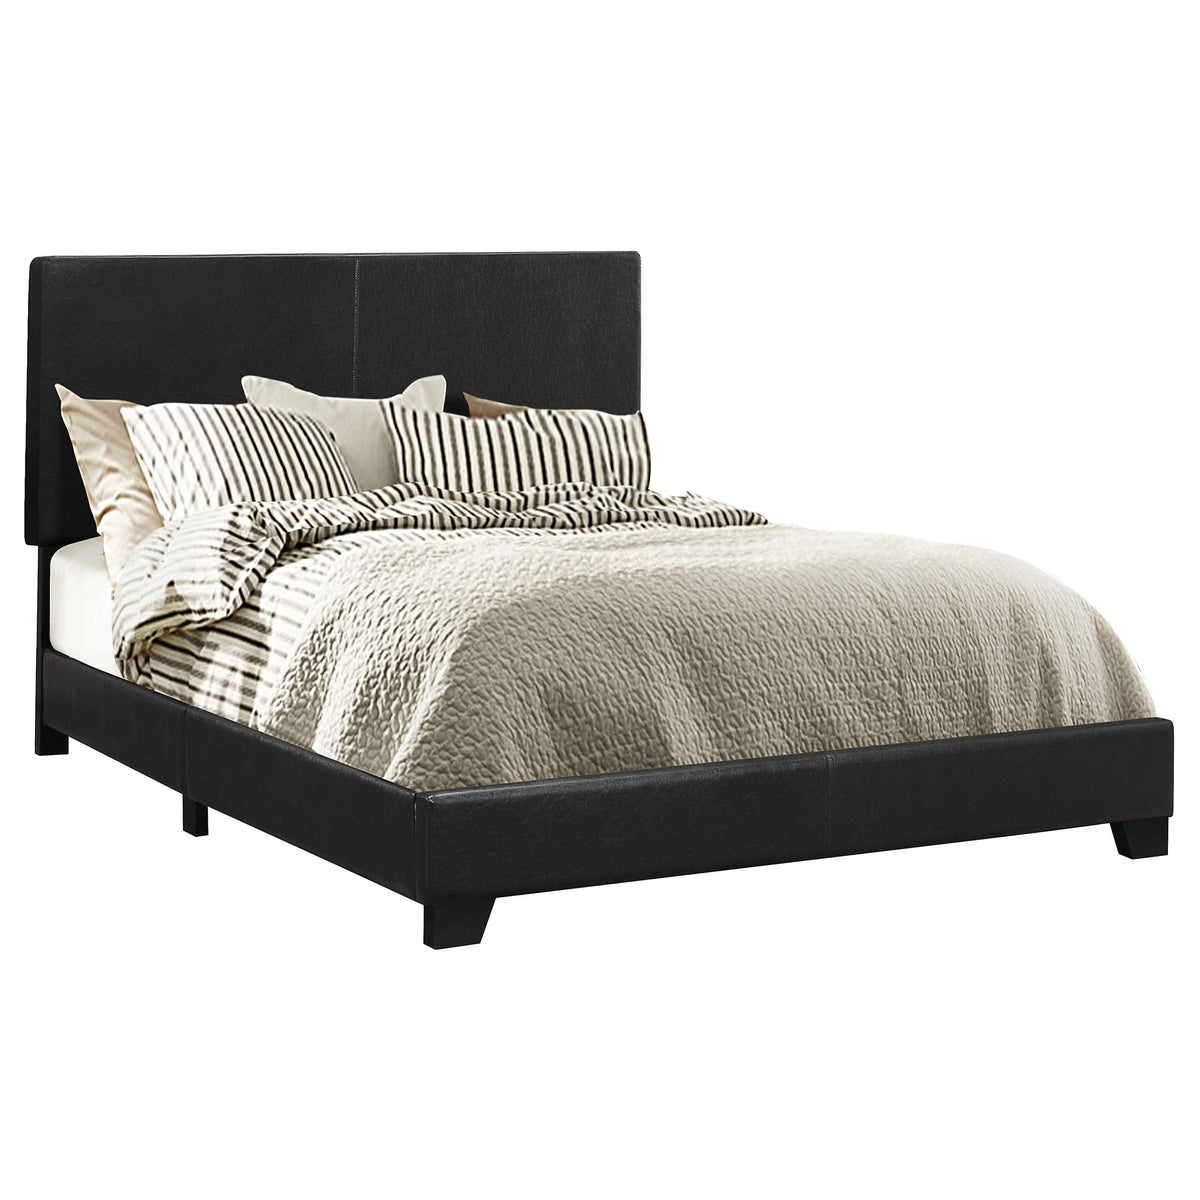 Dorian Upholstered Queen Bed Black  Half Price Furniture